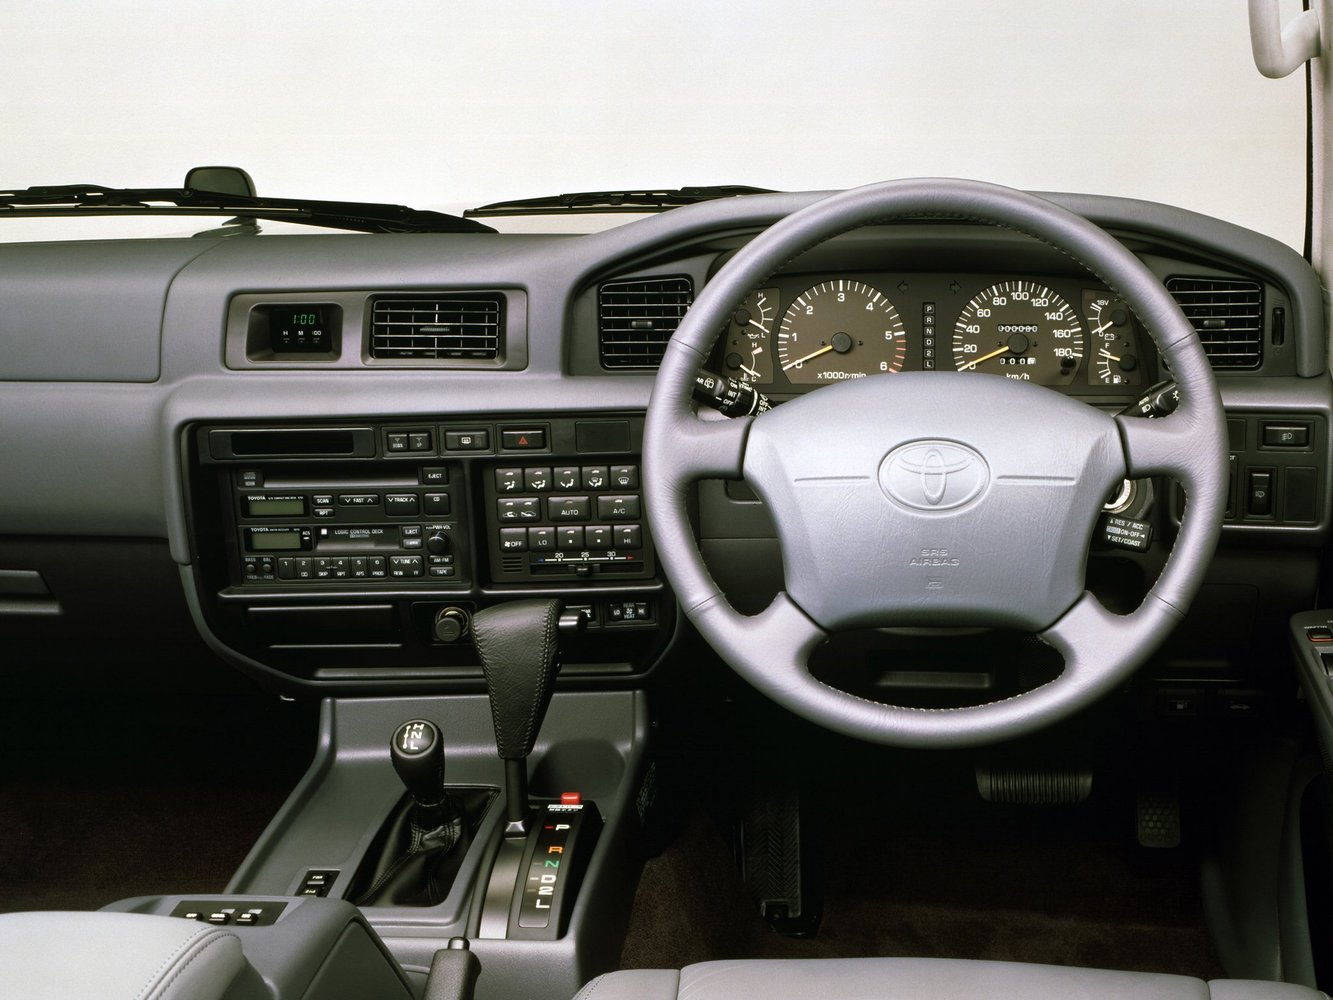 внедорожник Toyota Land Cruiser 1995 - 1997г выпуска модификация 4.2 AT (135 л.с.) 4×4